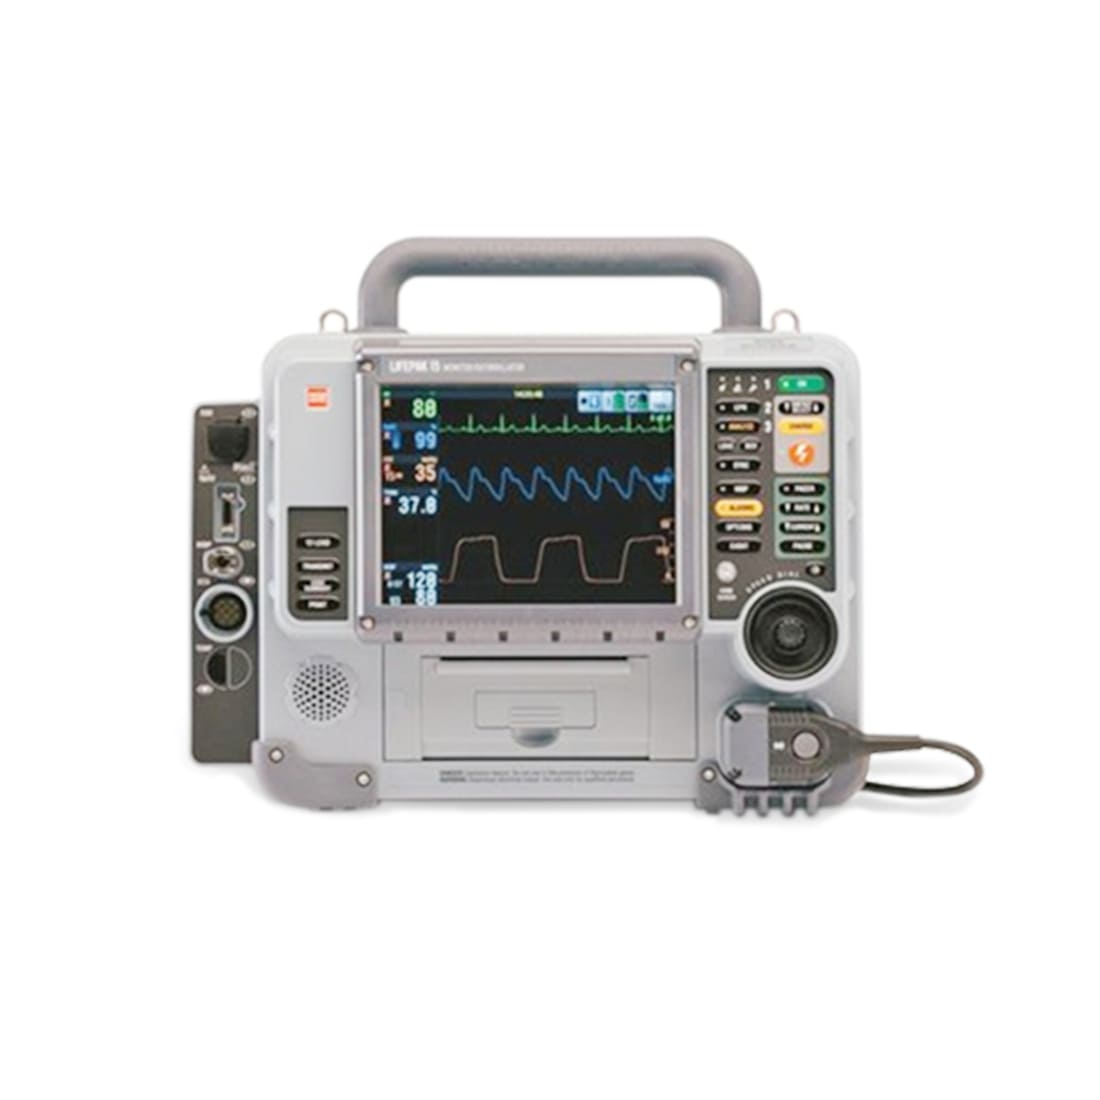 Stryker Physio Control Lifepak 15 Defibrillator